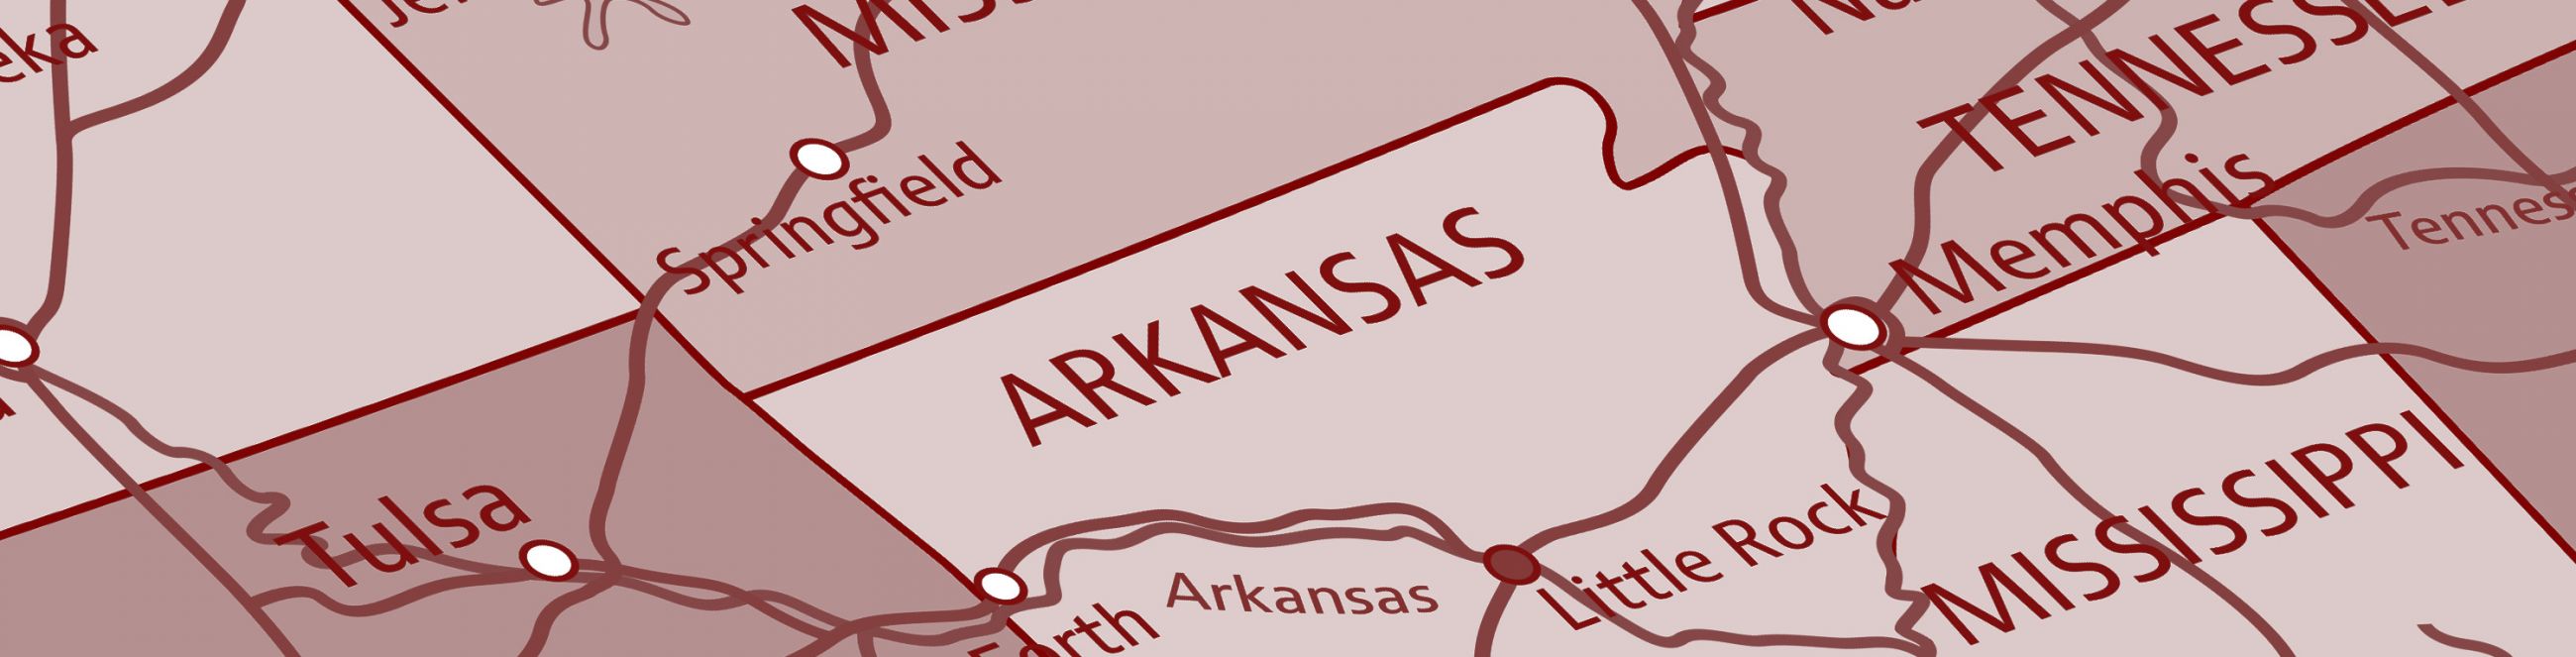 Delta 8 Arkansas Facts & Is Delta 8 Legal in Arkansas?